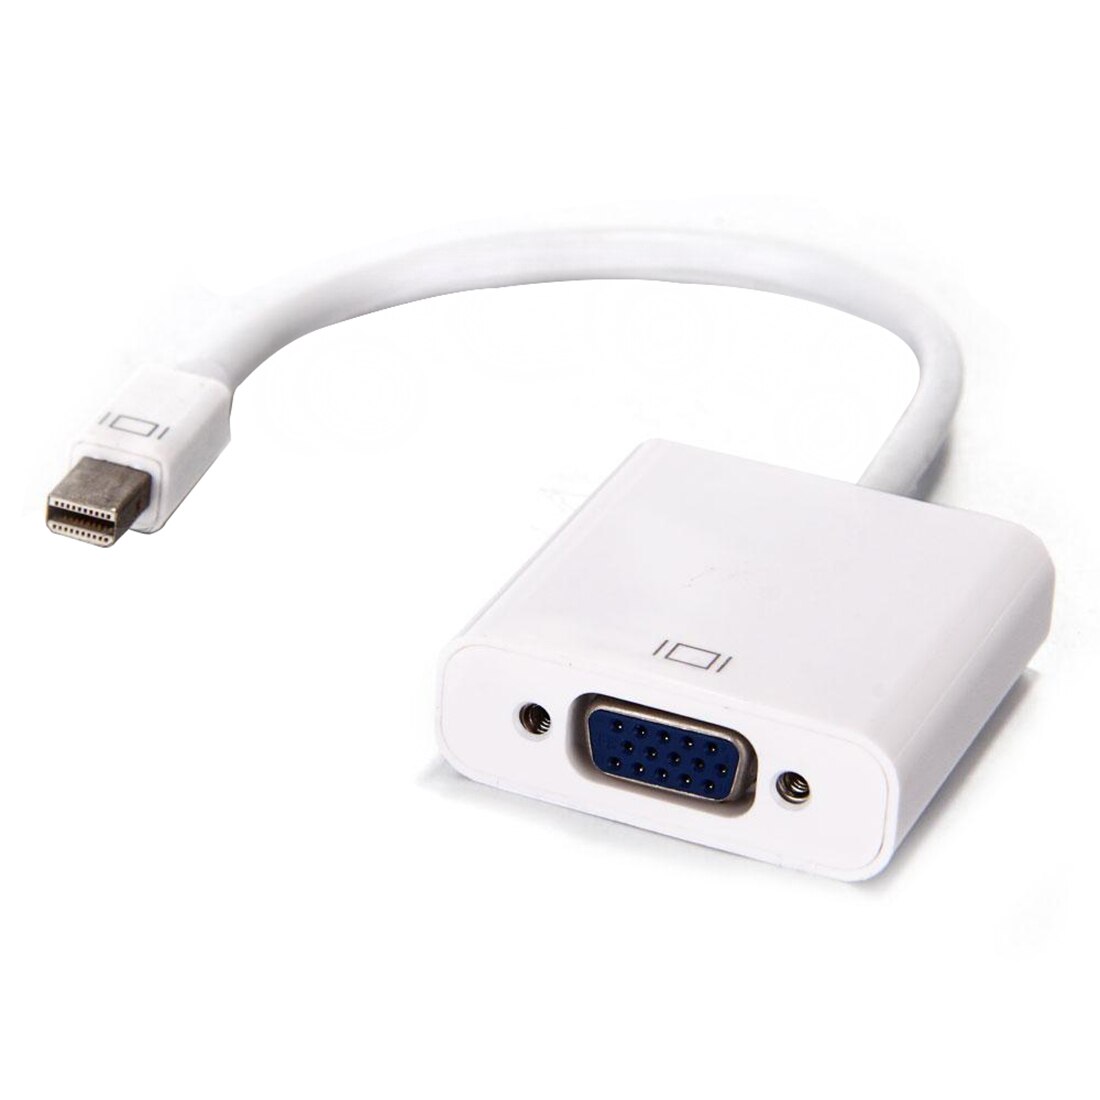 Centechia Mini Display Port Dp Naar Vga Kabel Adapter Converter Voor Apple Imac Mac